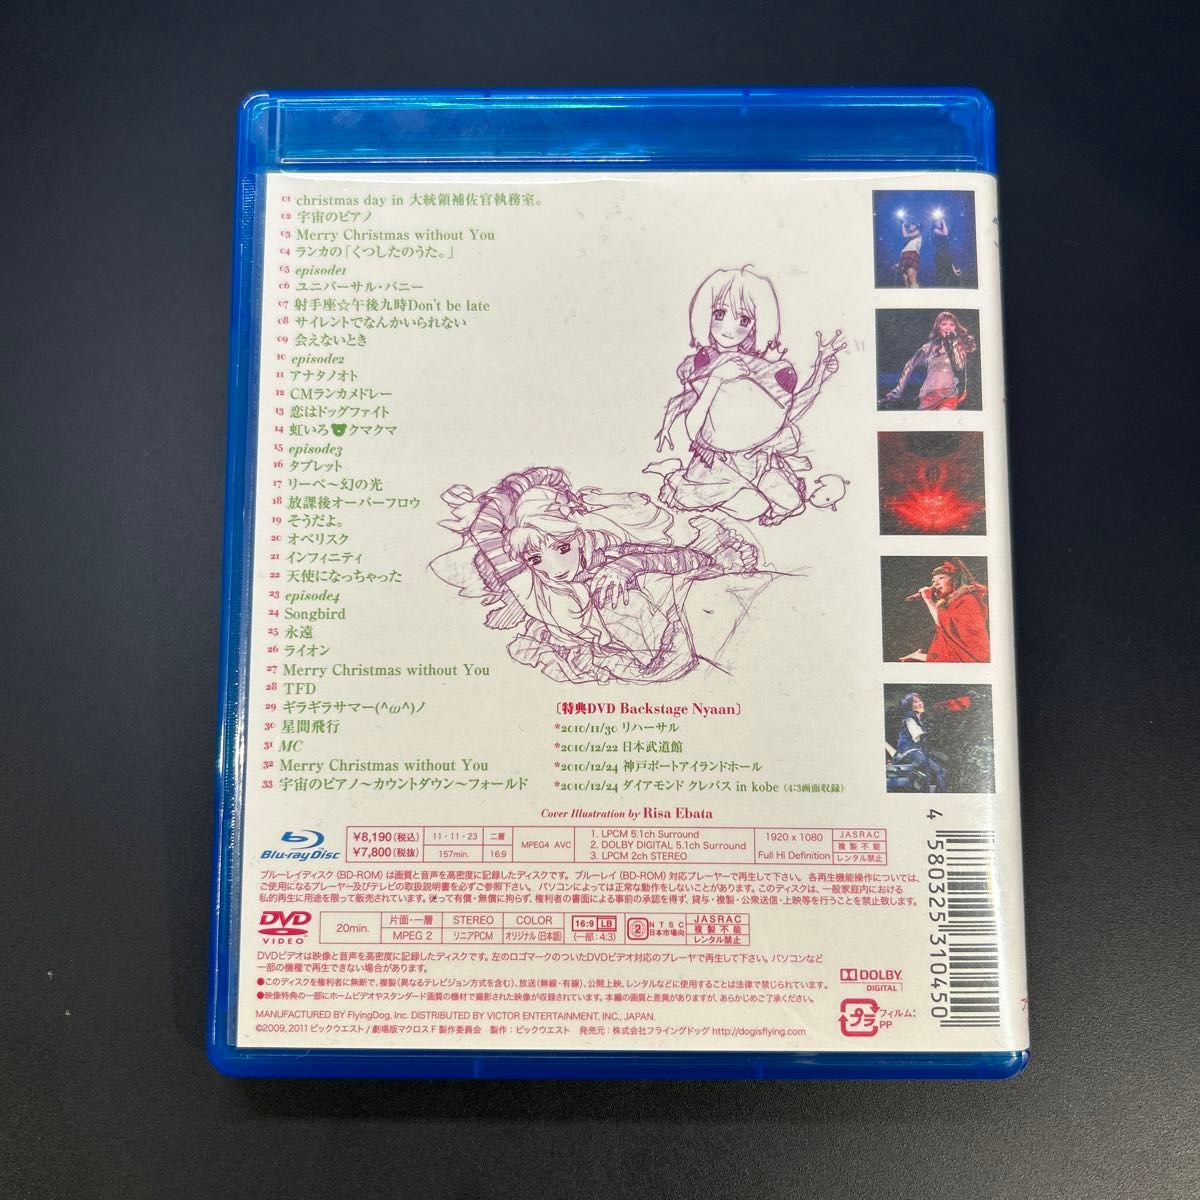 マクロスF 超時空スーパーライブ cosmic nyaan(コズミック娘) [Blu-ray]